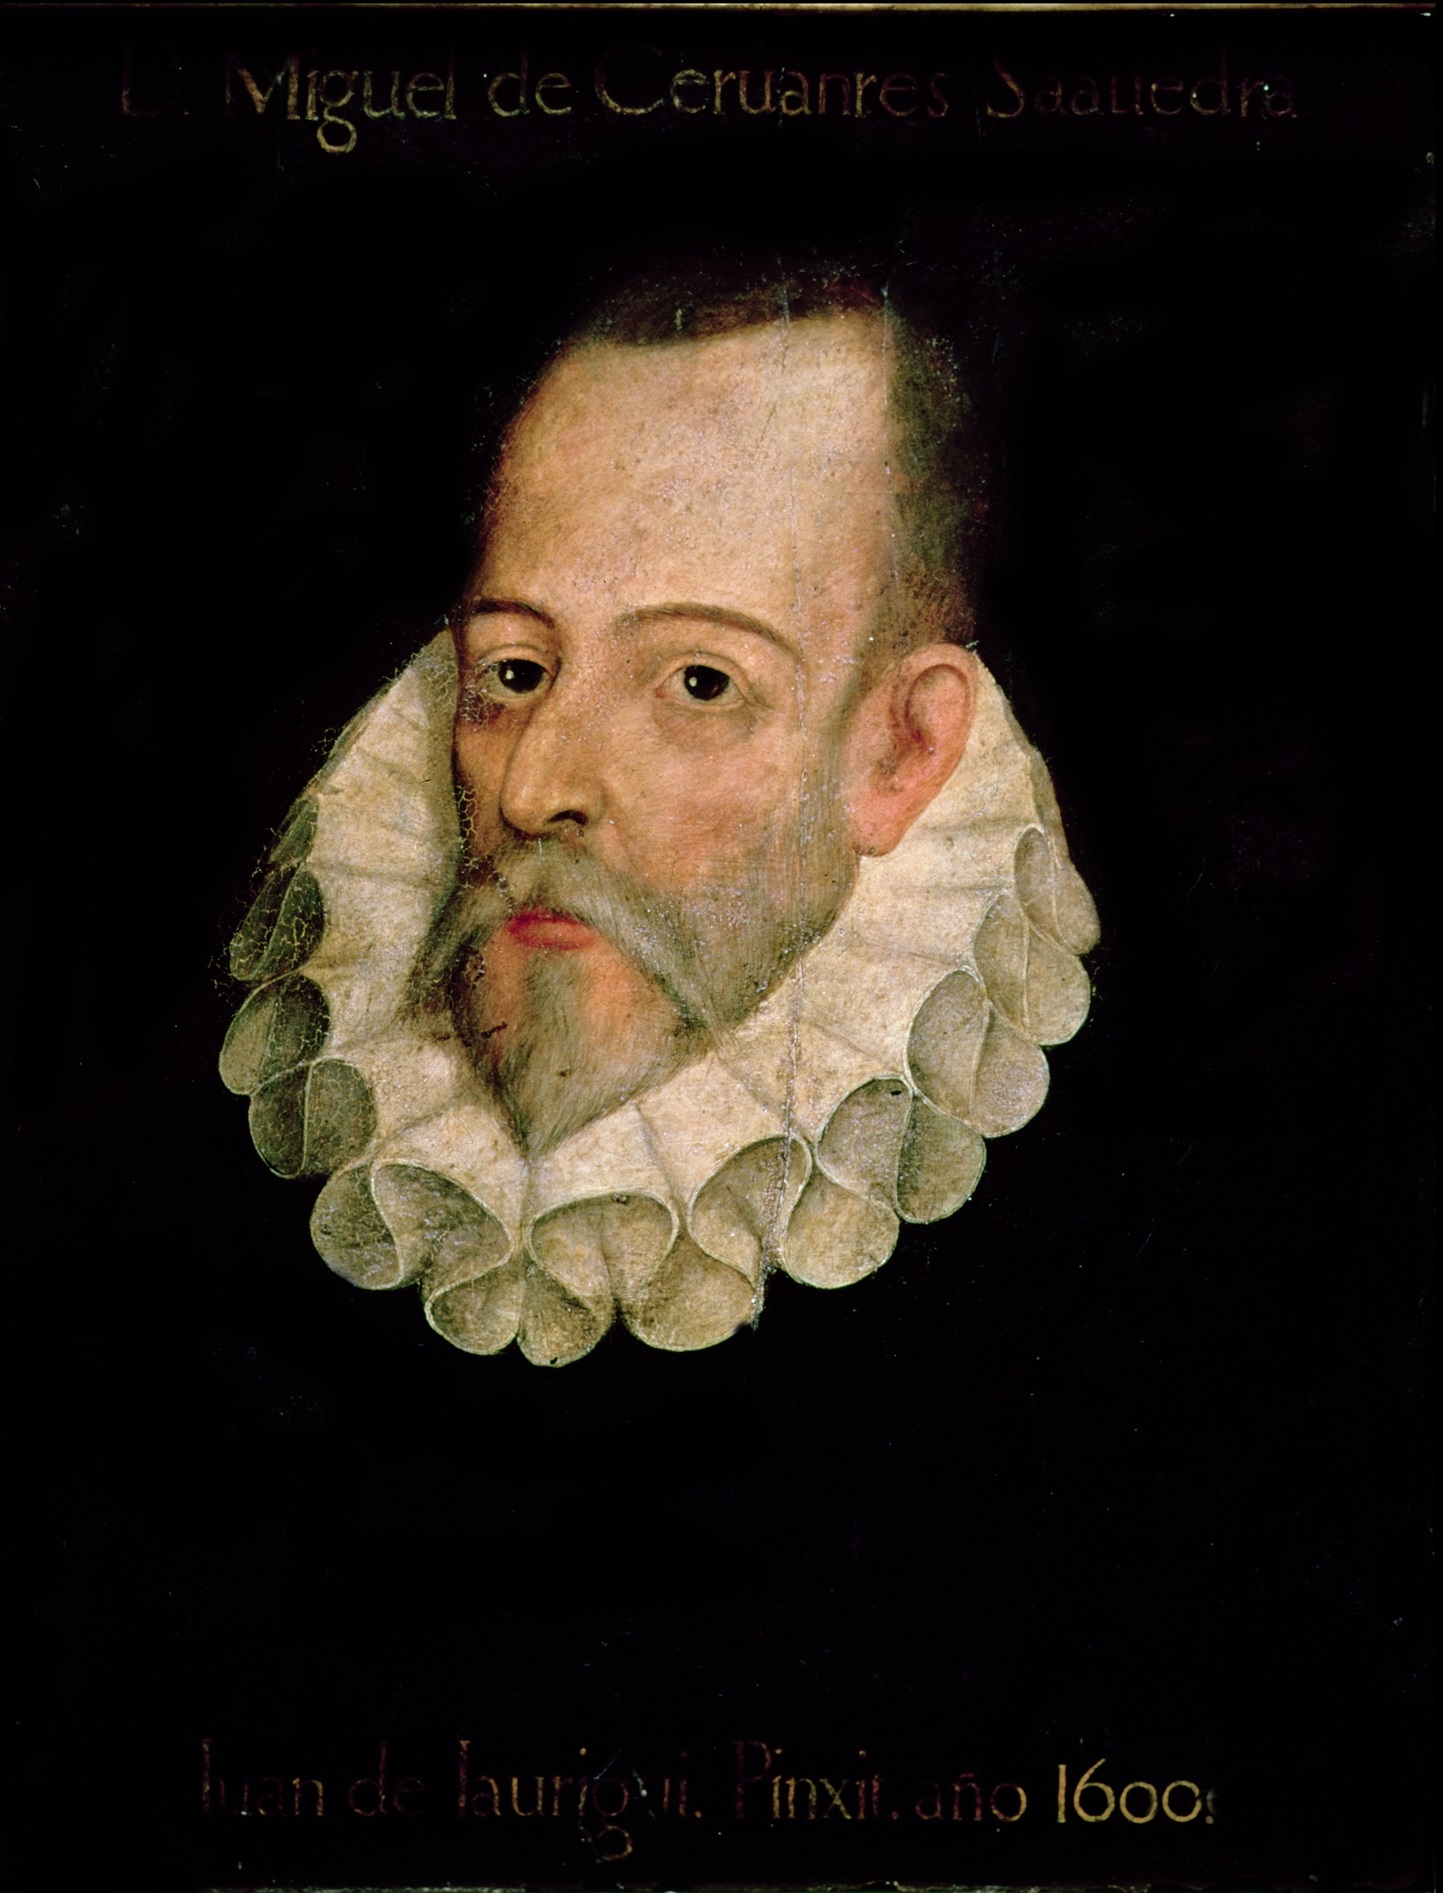 Πορτρέτο του Μιγκέλ ντε Θερβάντες από τον Χουάν ντι Χαουρέγκι. Photo Credits: Wikimedia Commons